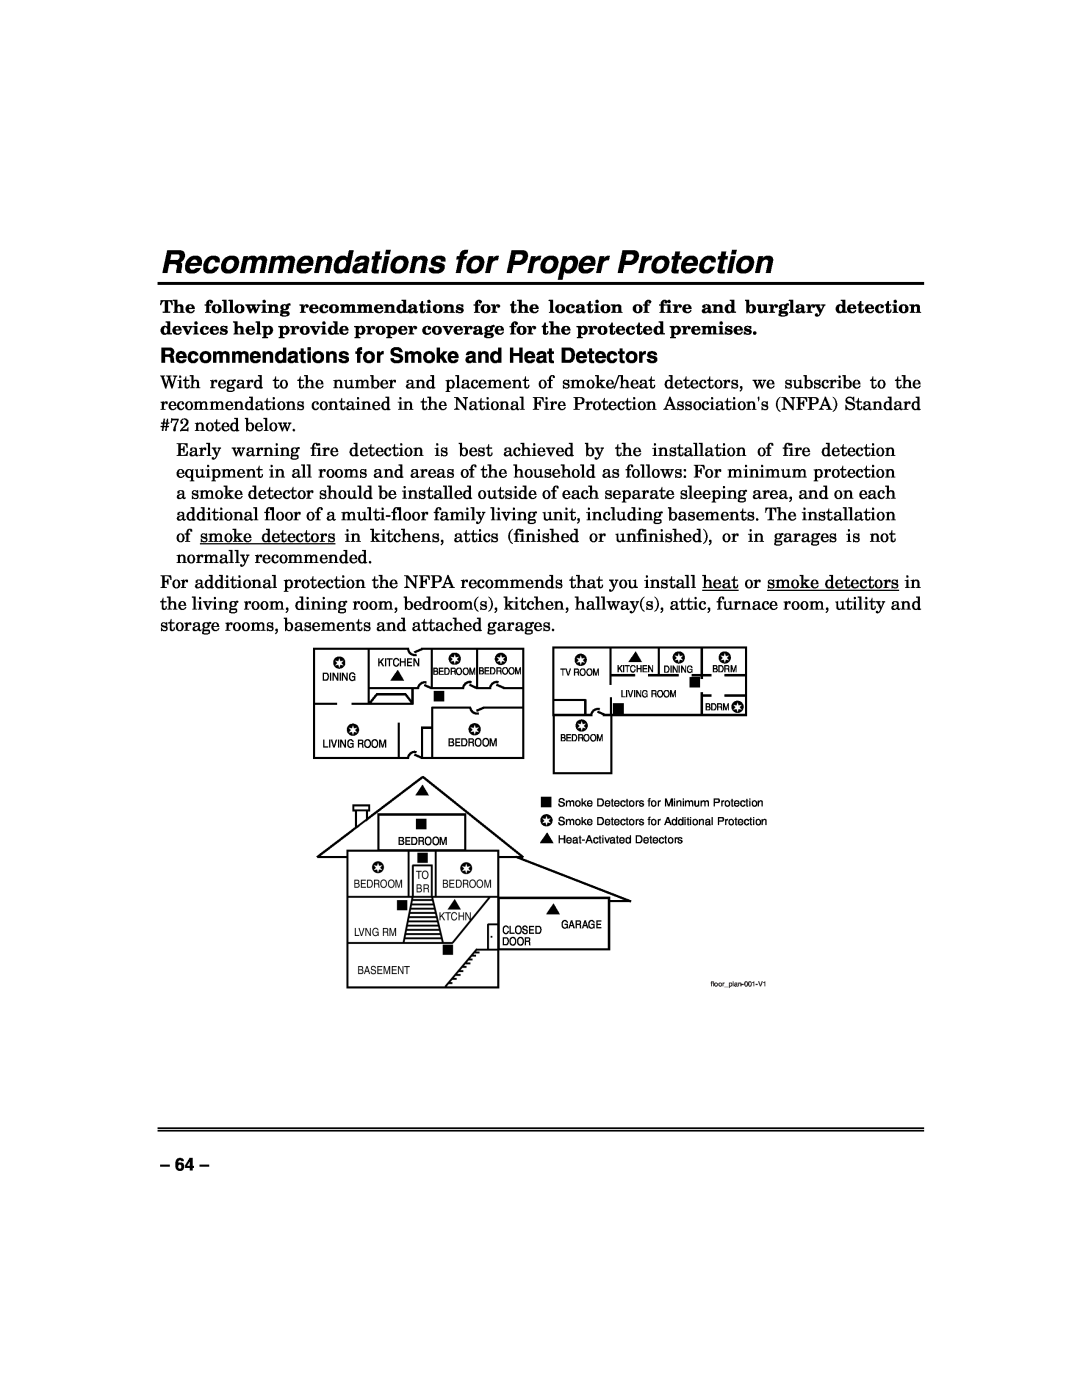 Honeywell VISTA128BPT, VISTA250BPT Recommendations for Proper Protection, Recommendations for Smoke and Heat Detectors 